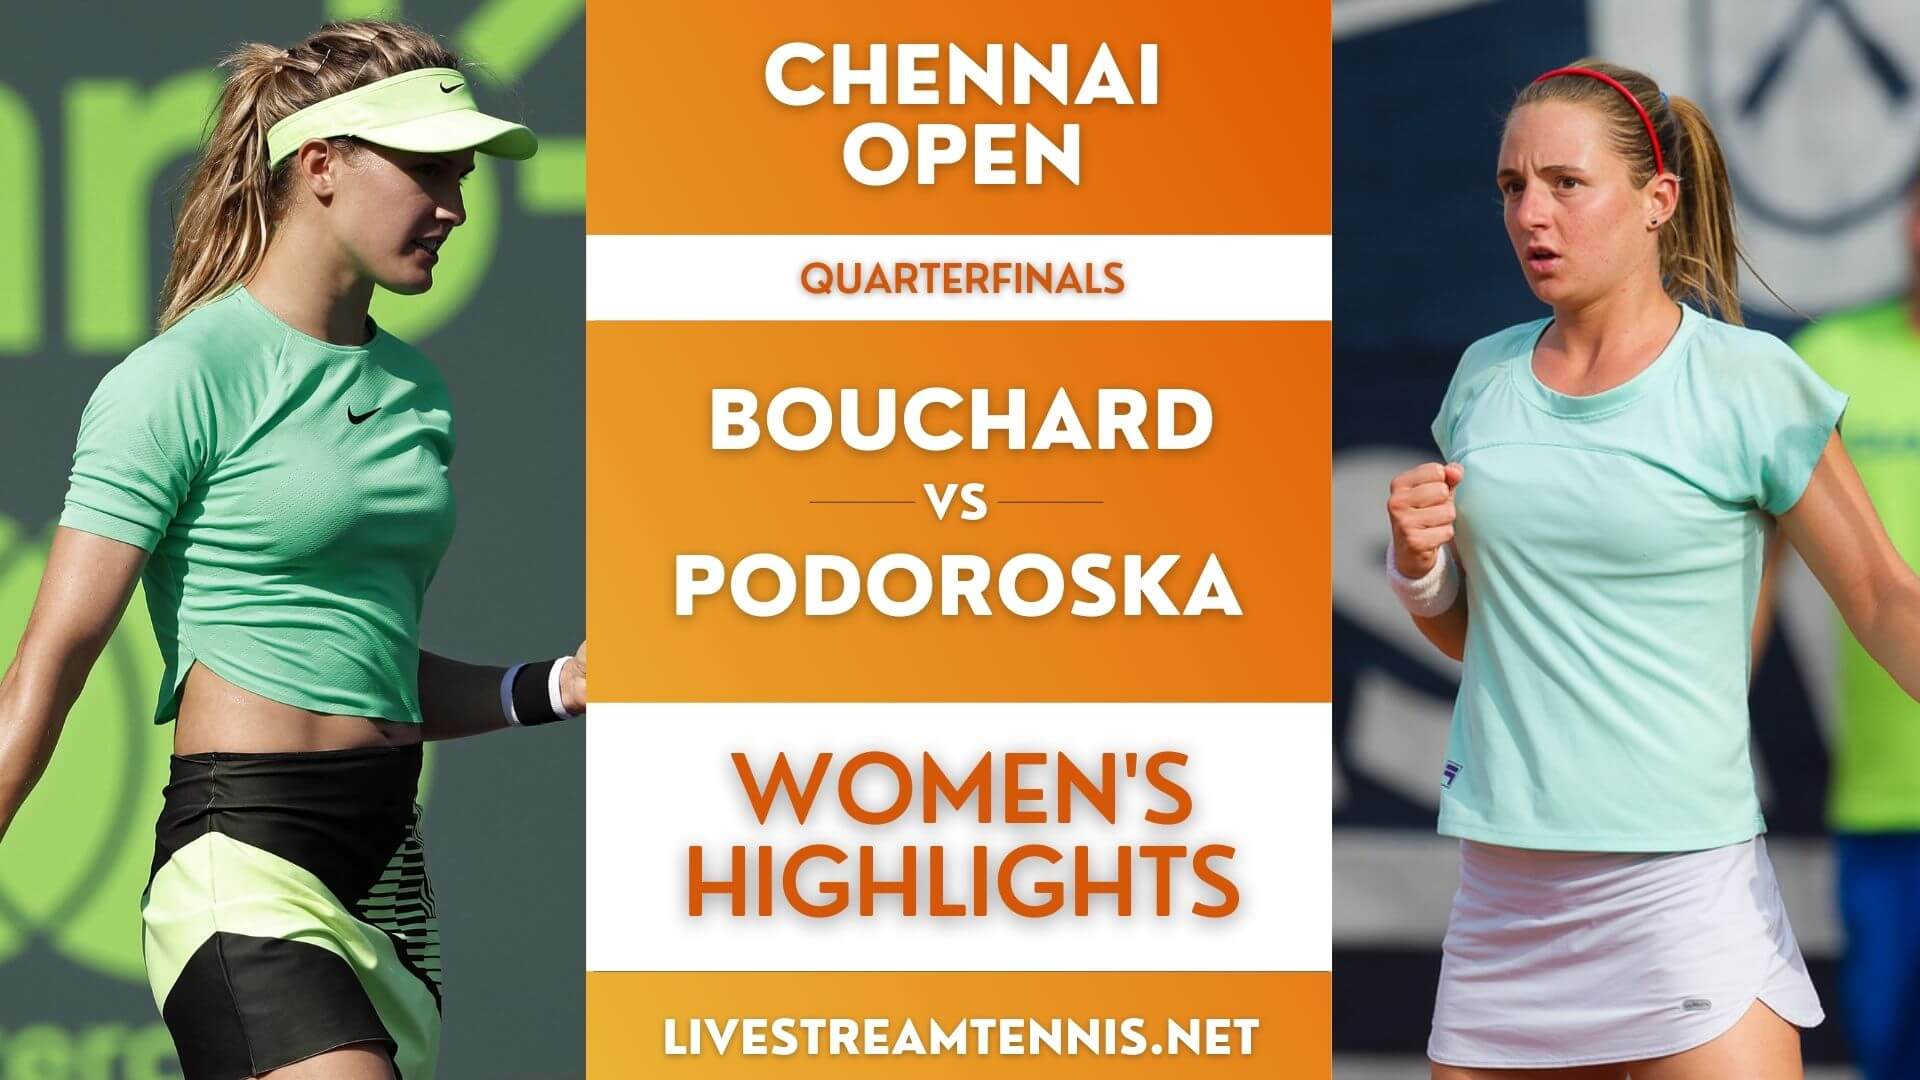 Chennai Open Women Quarterfinal 3 Highlights 2022